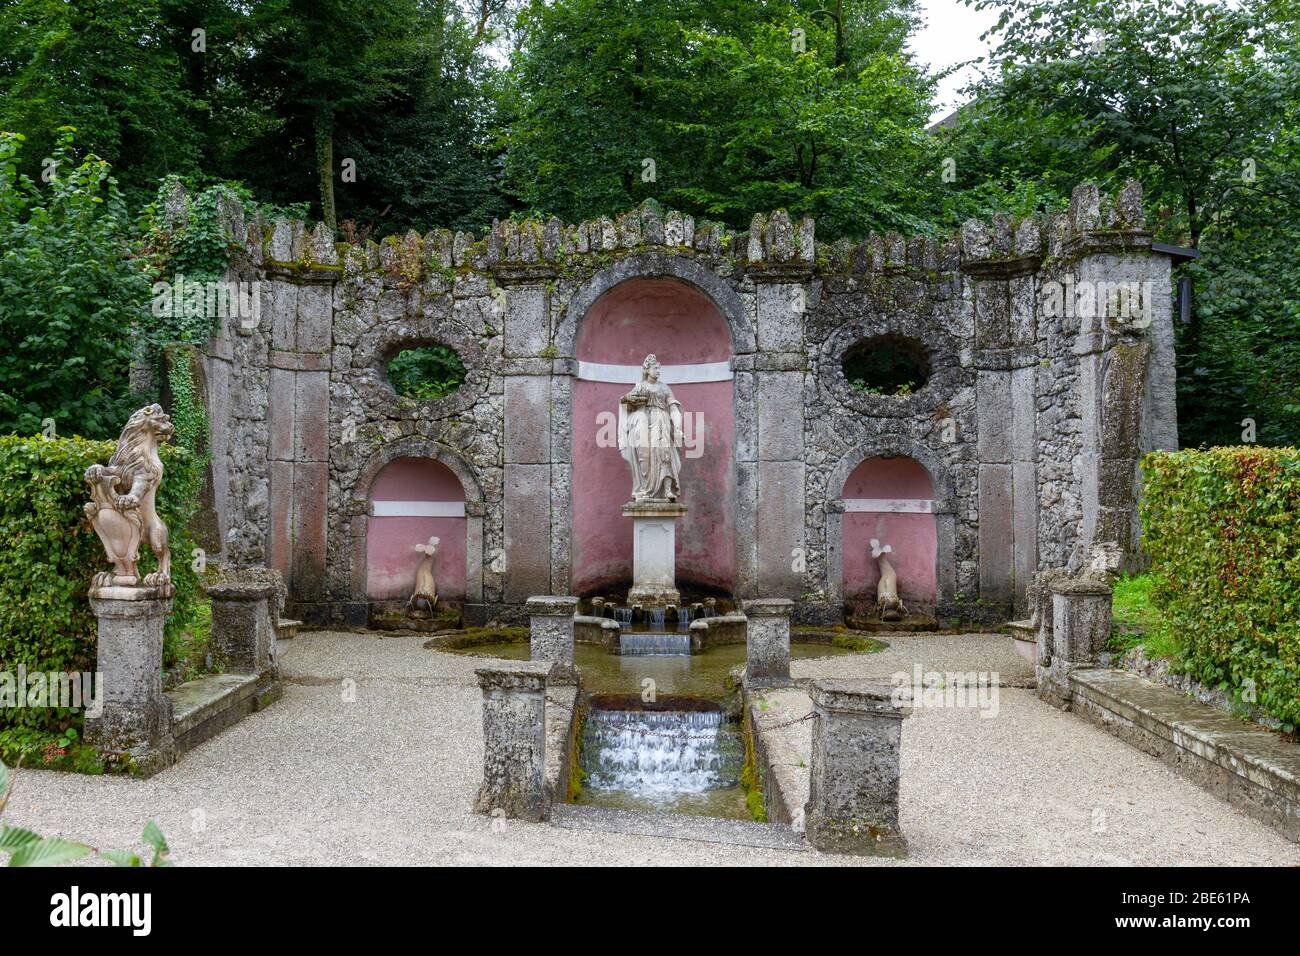 La pierre se trouve dans les jardins/jardins de Schloss Hellbrunn, Salzbourg, Autriche. Banque D'Images